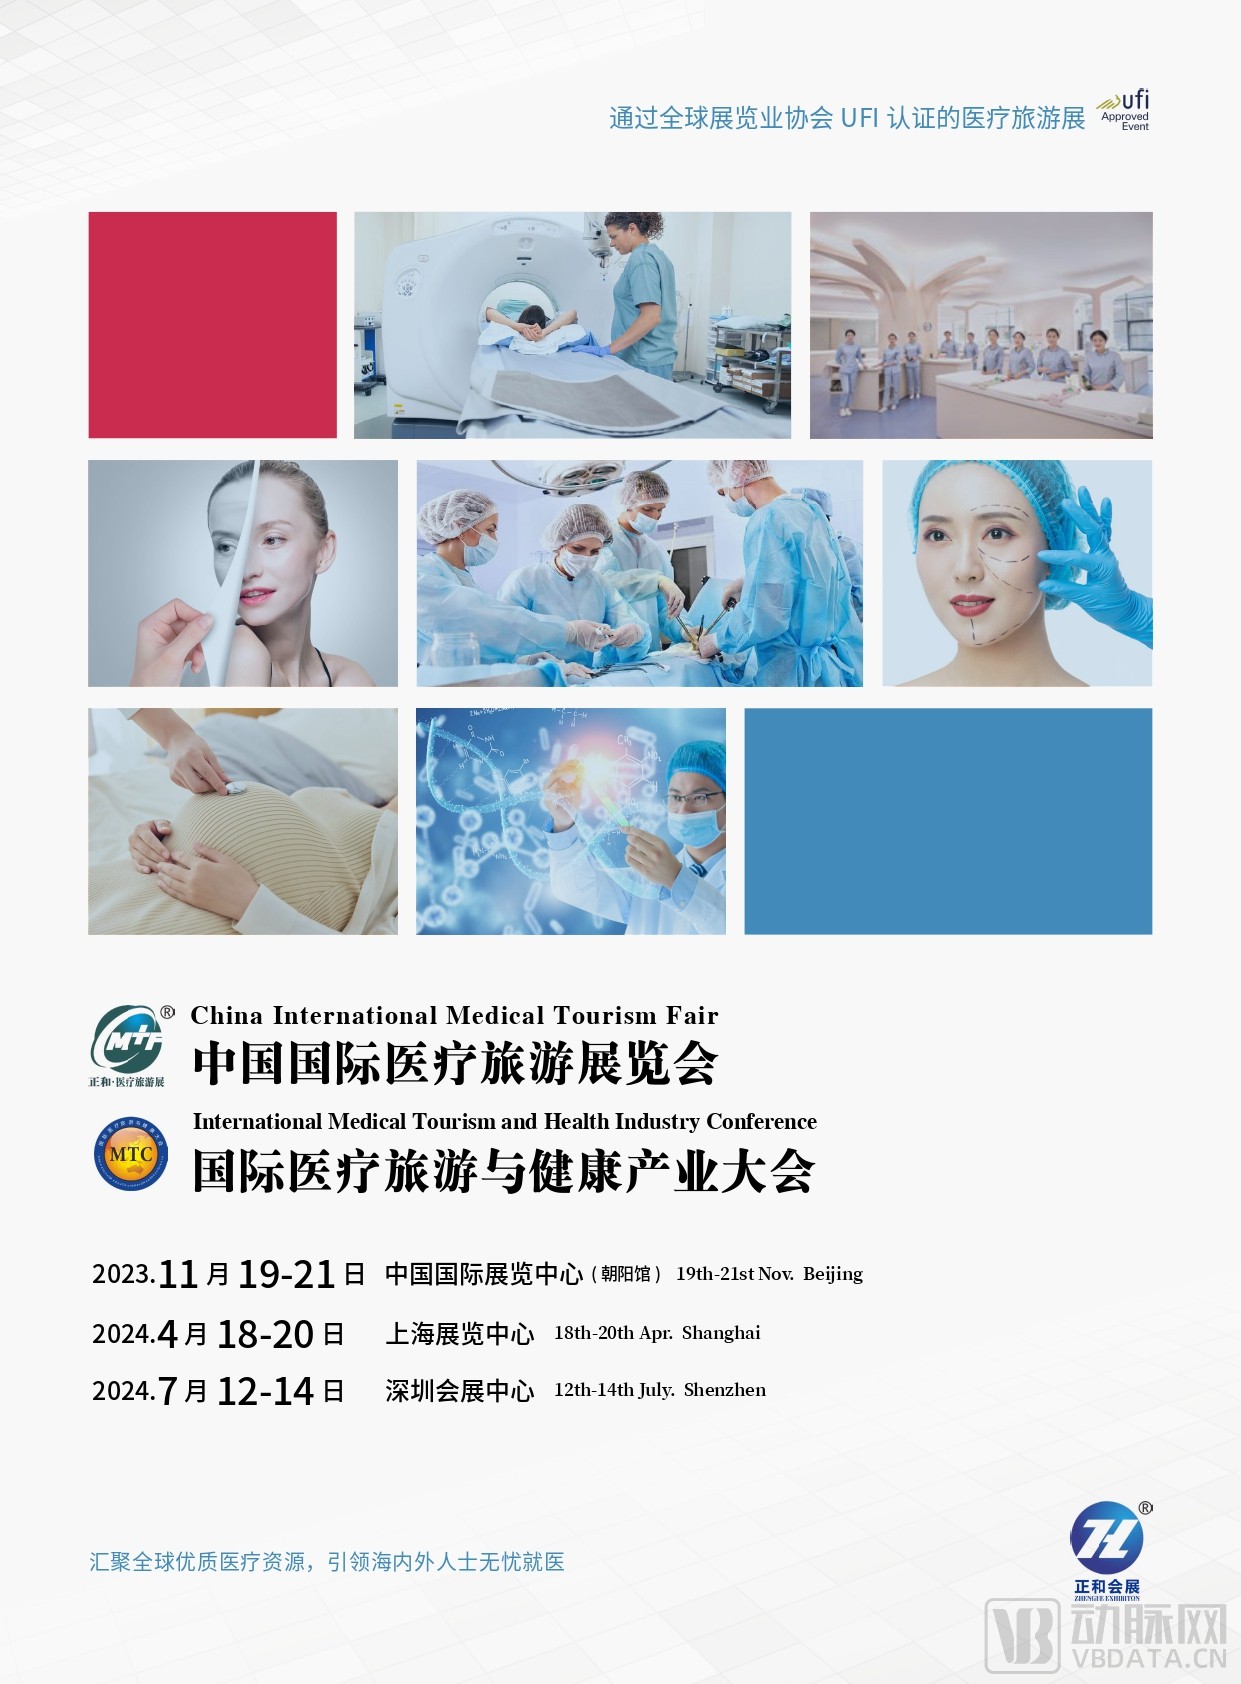 2023国际医疗旅游展邀请函（吴君芳）_page-0001.jpg